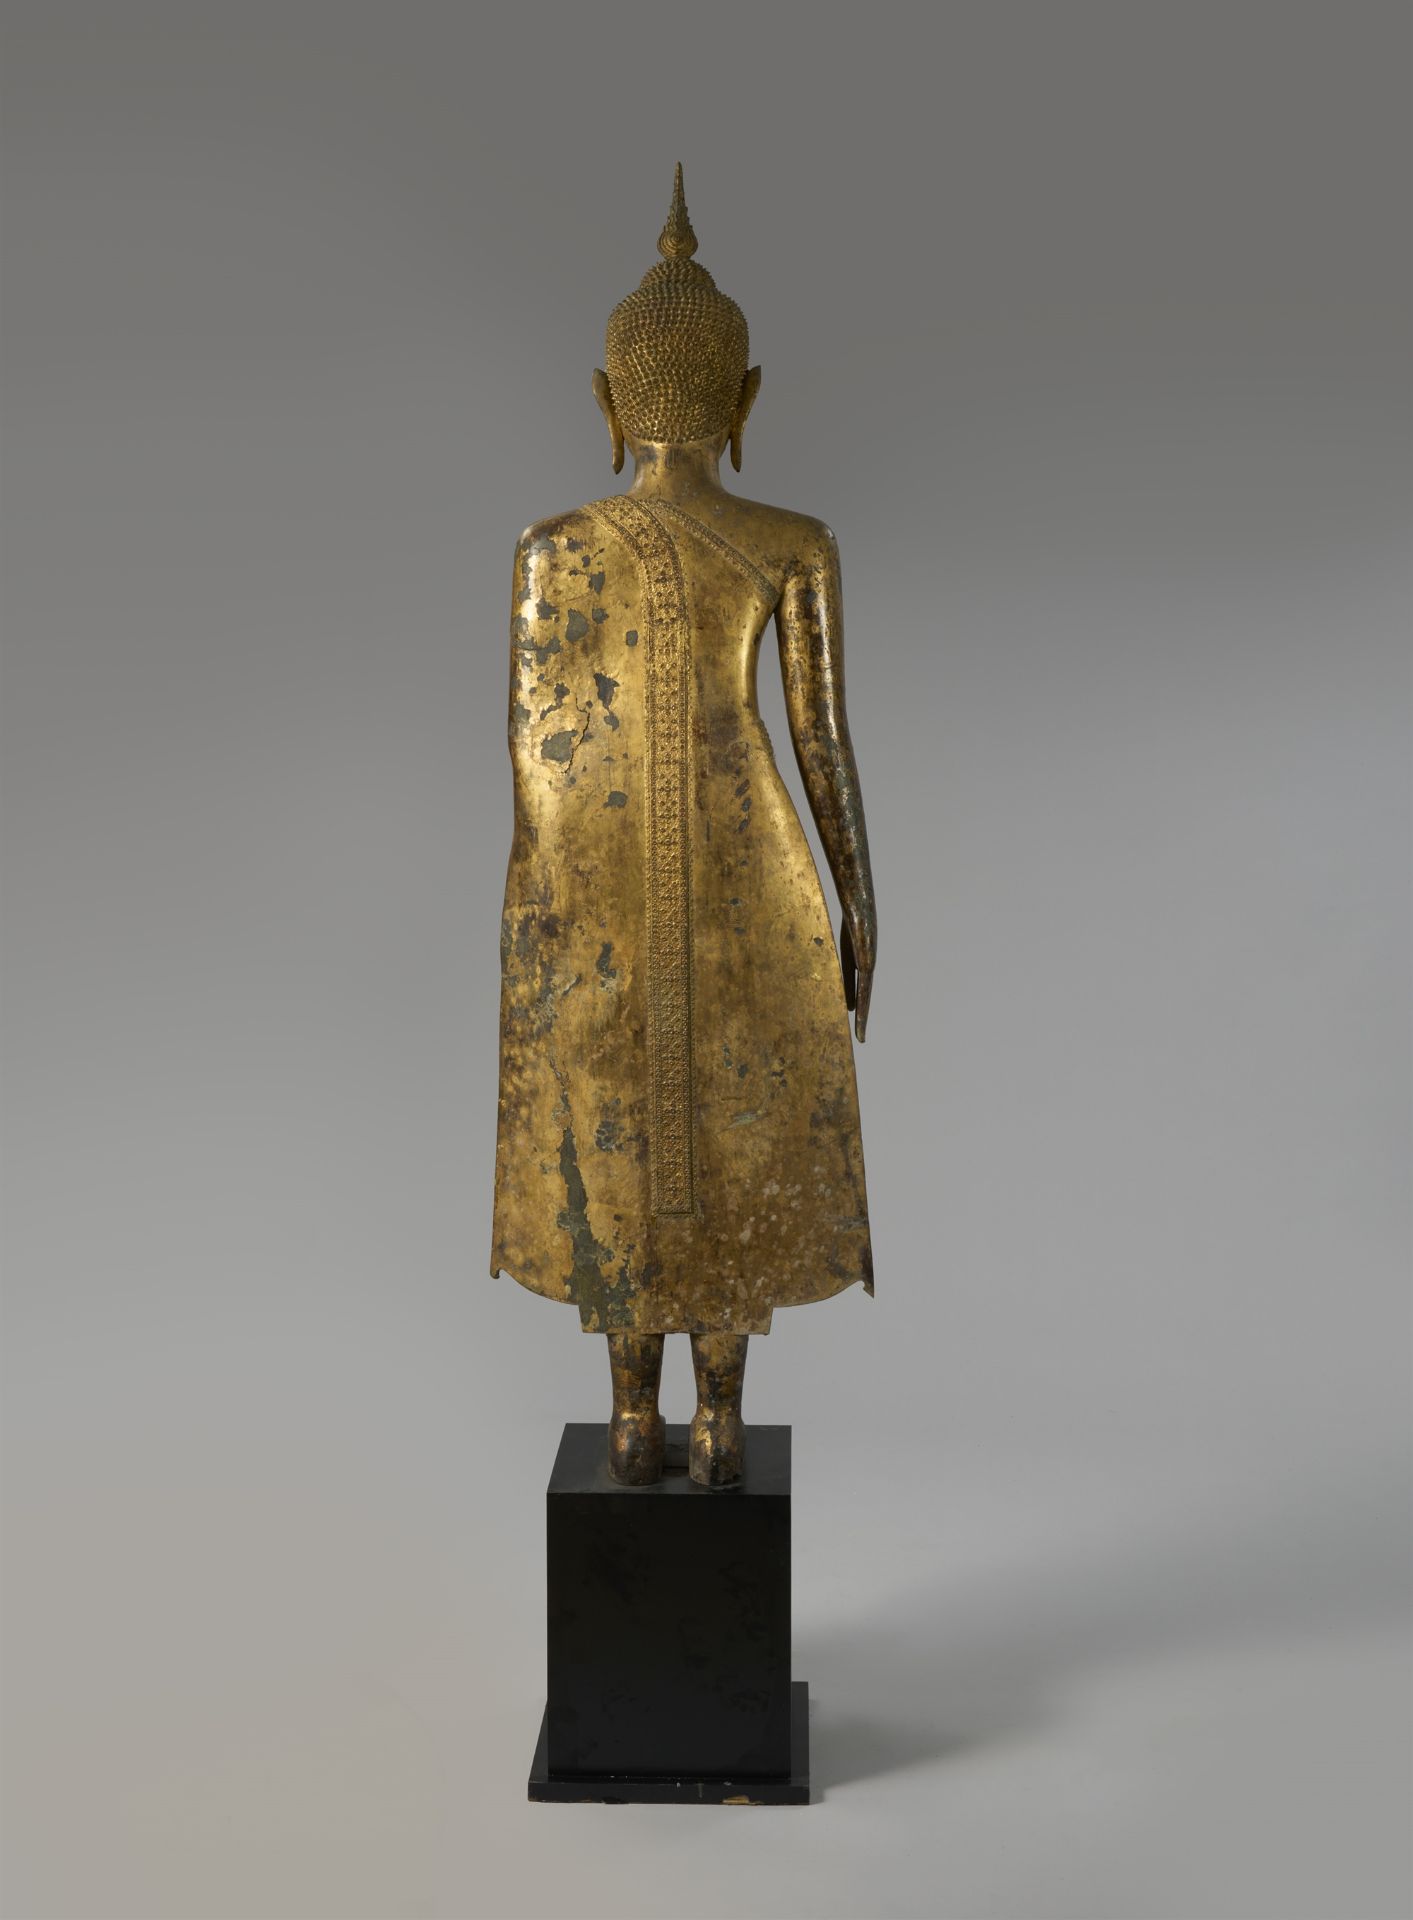 Sehr große Figur eines Buddha. Bronze, vergoldet. Thailand. Ratanakosin. Frühes 19. Jh. - Bild 2 aus 2